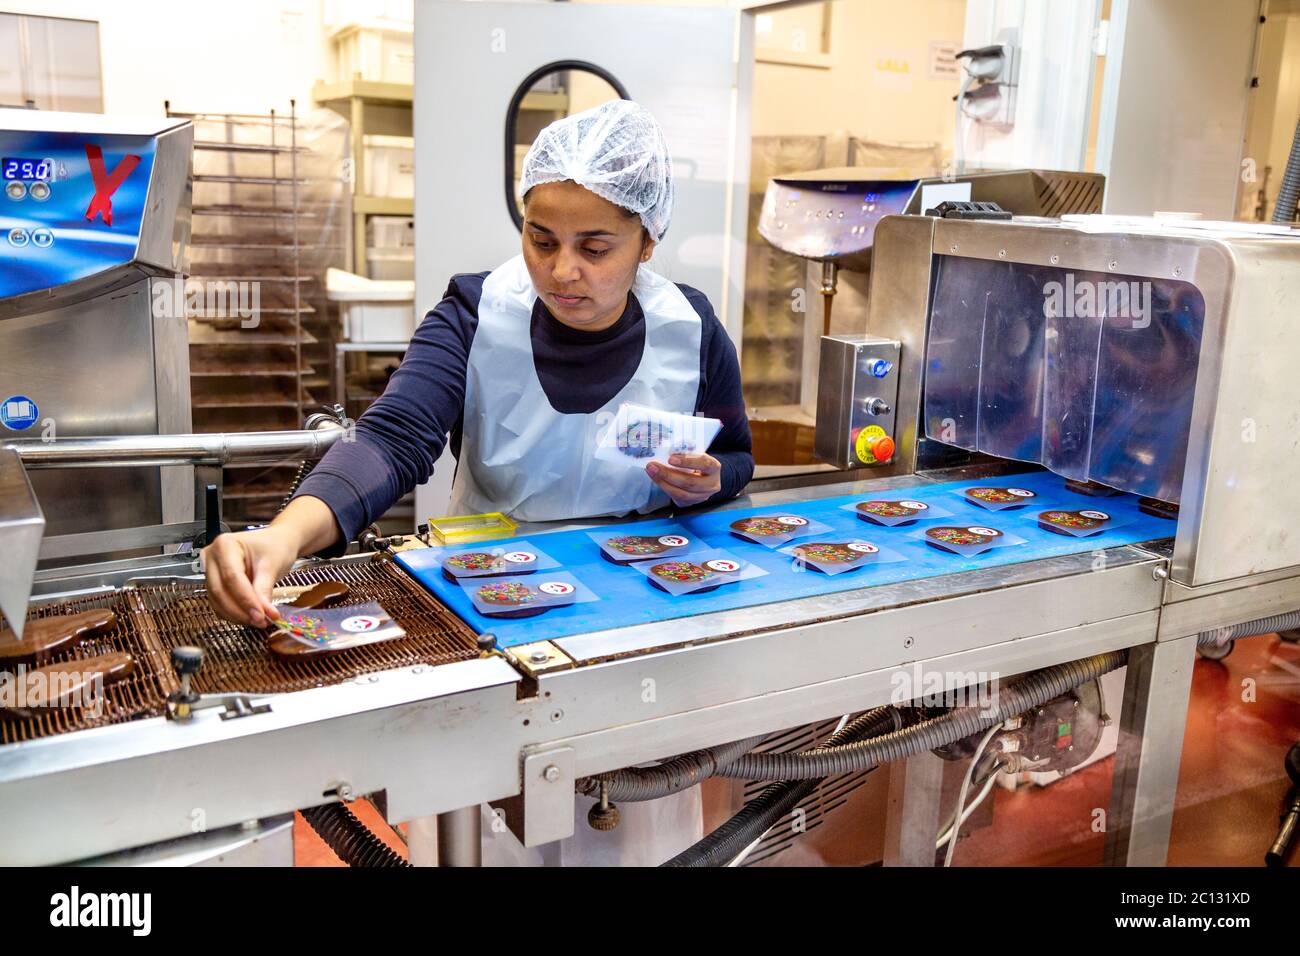 L'atelier du chocolat, Musée du chocolat (Musée du chocolat) Bayonne, France, est un ouvrier de chocolaterie qui met des motifs colorés sur des barres de chocolat Banque D'Images